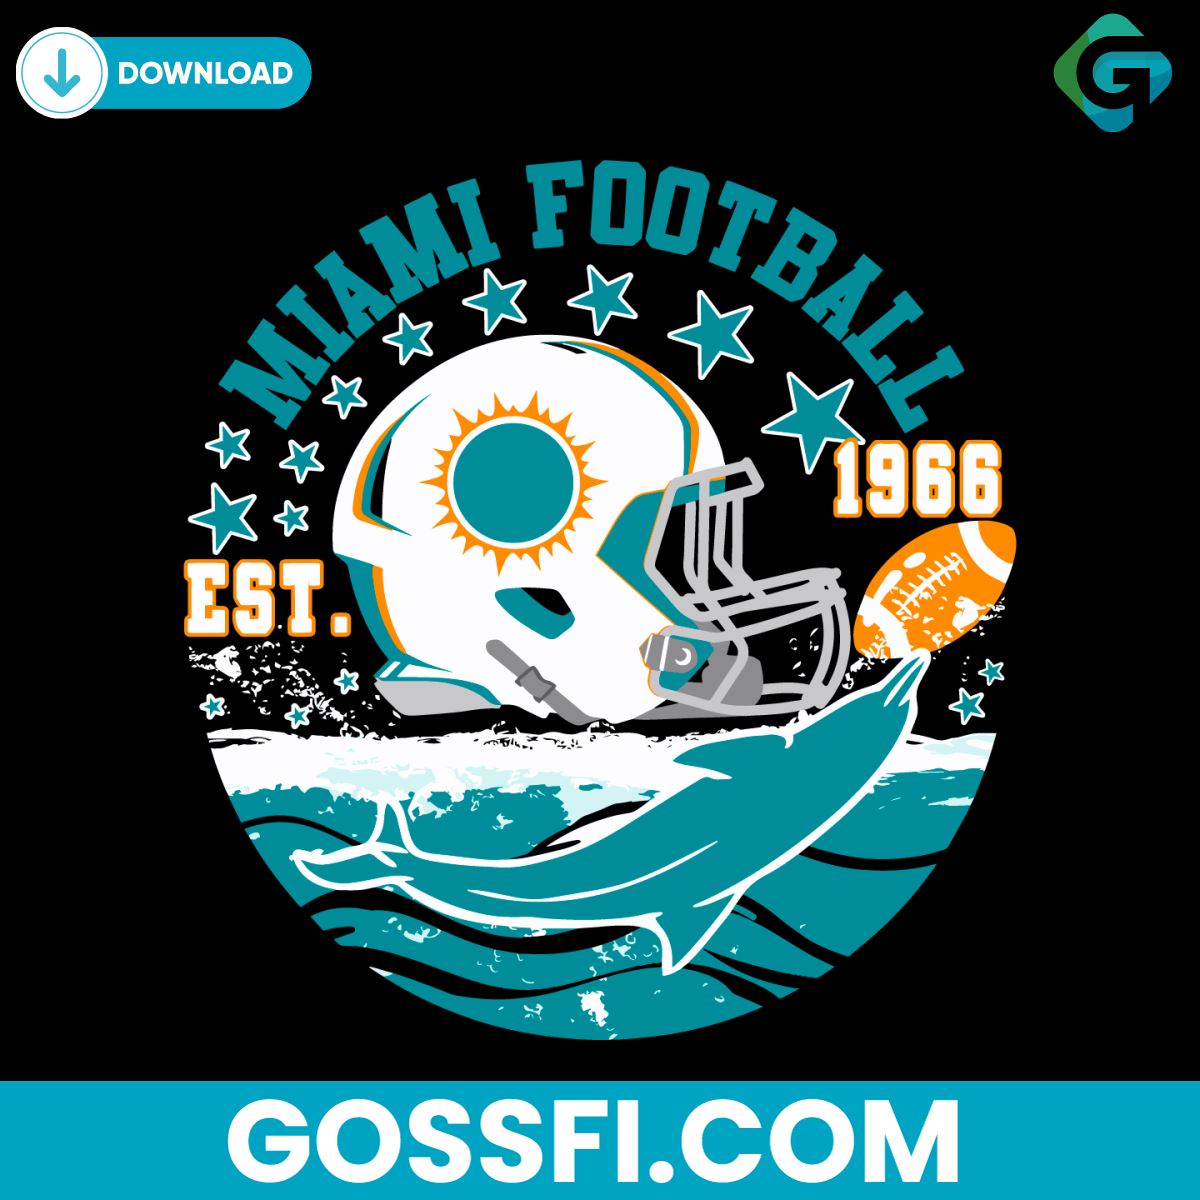 miami-football-helmet-dolphin-svg-digital-download